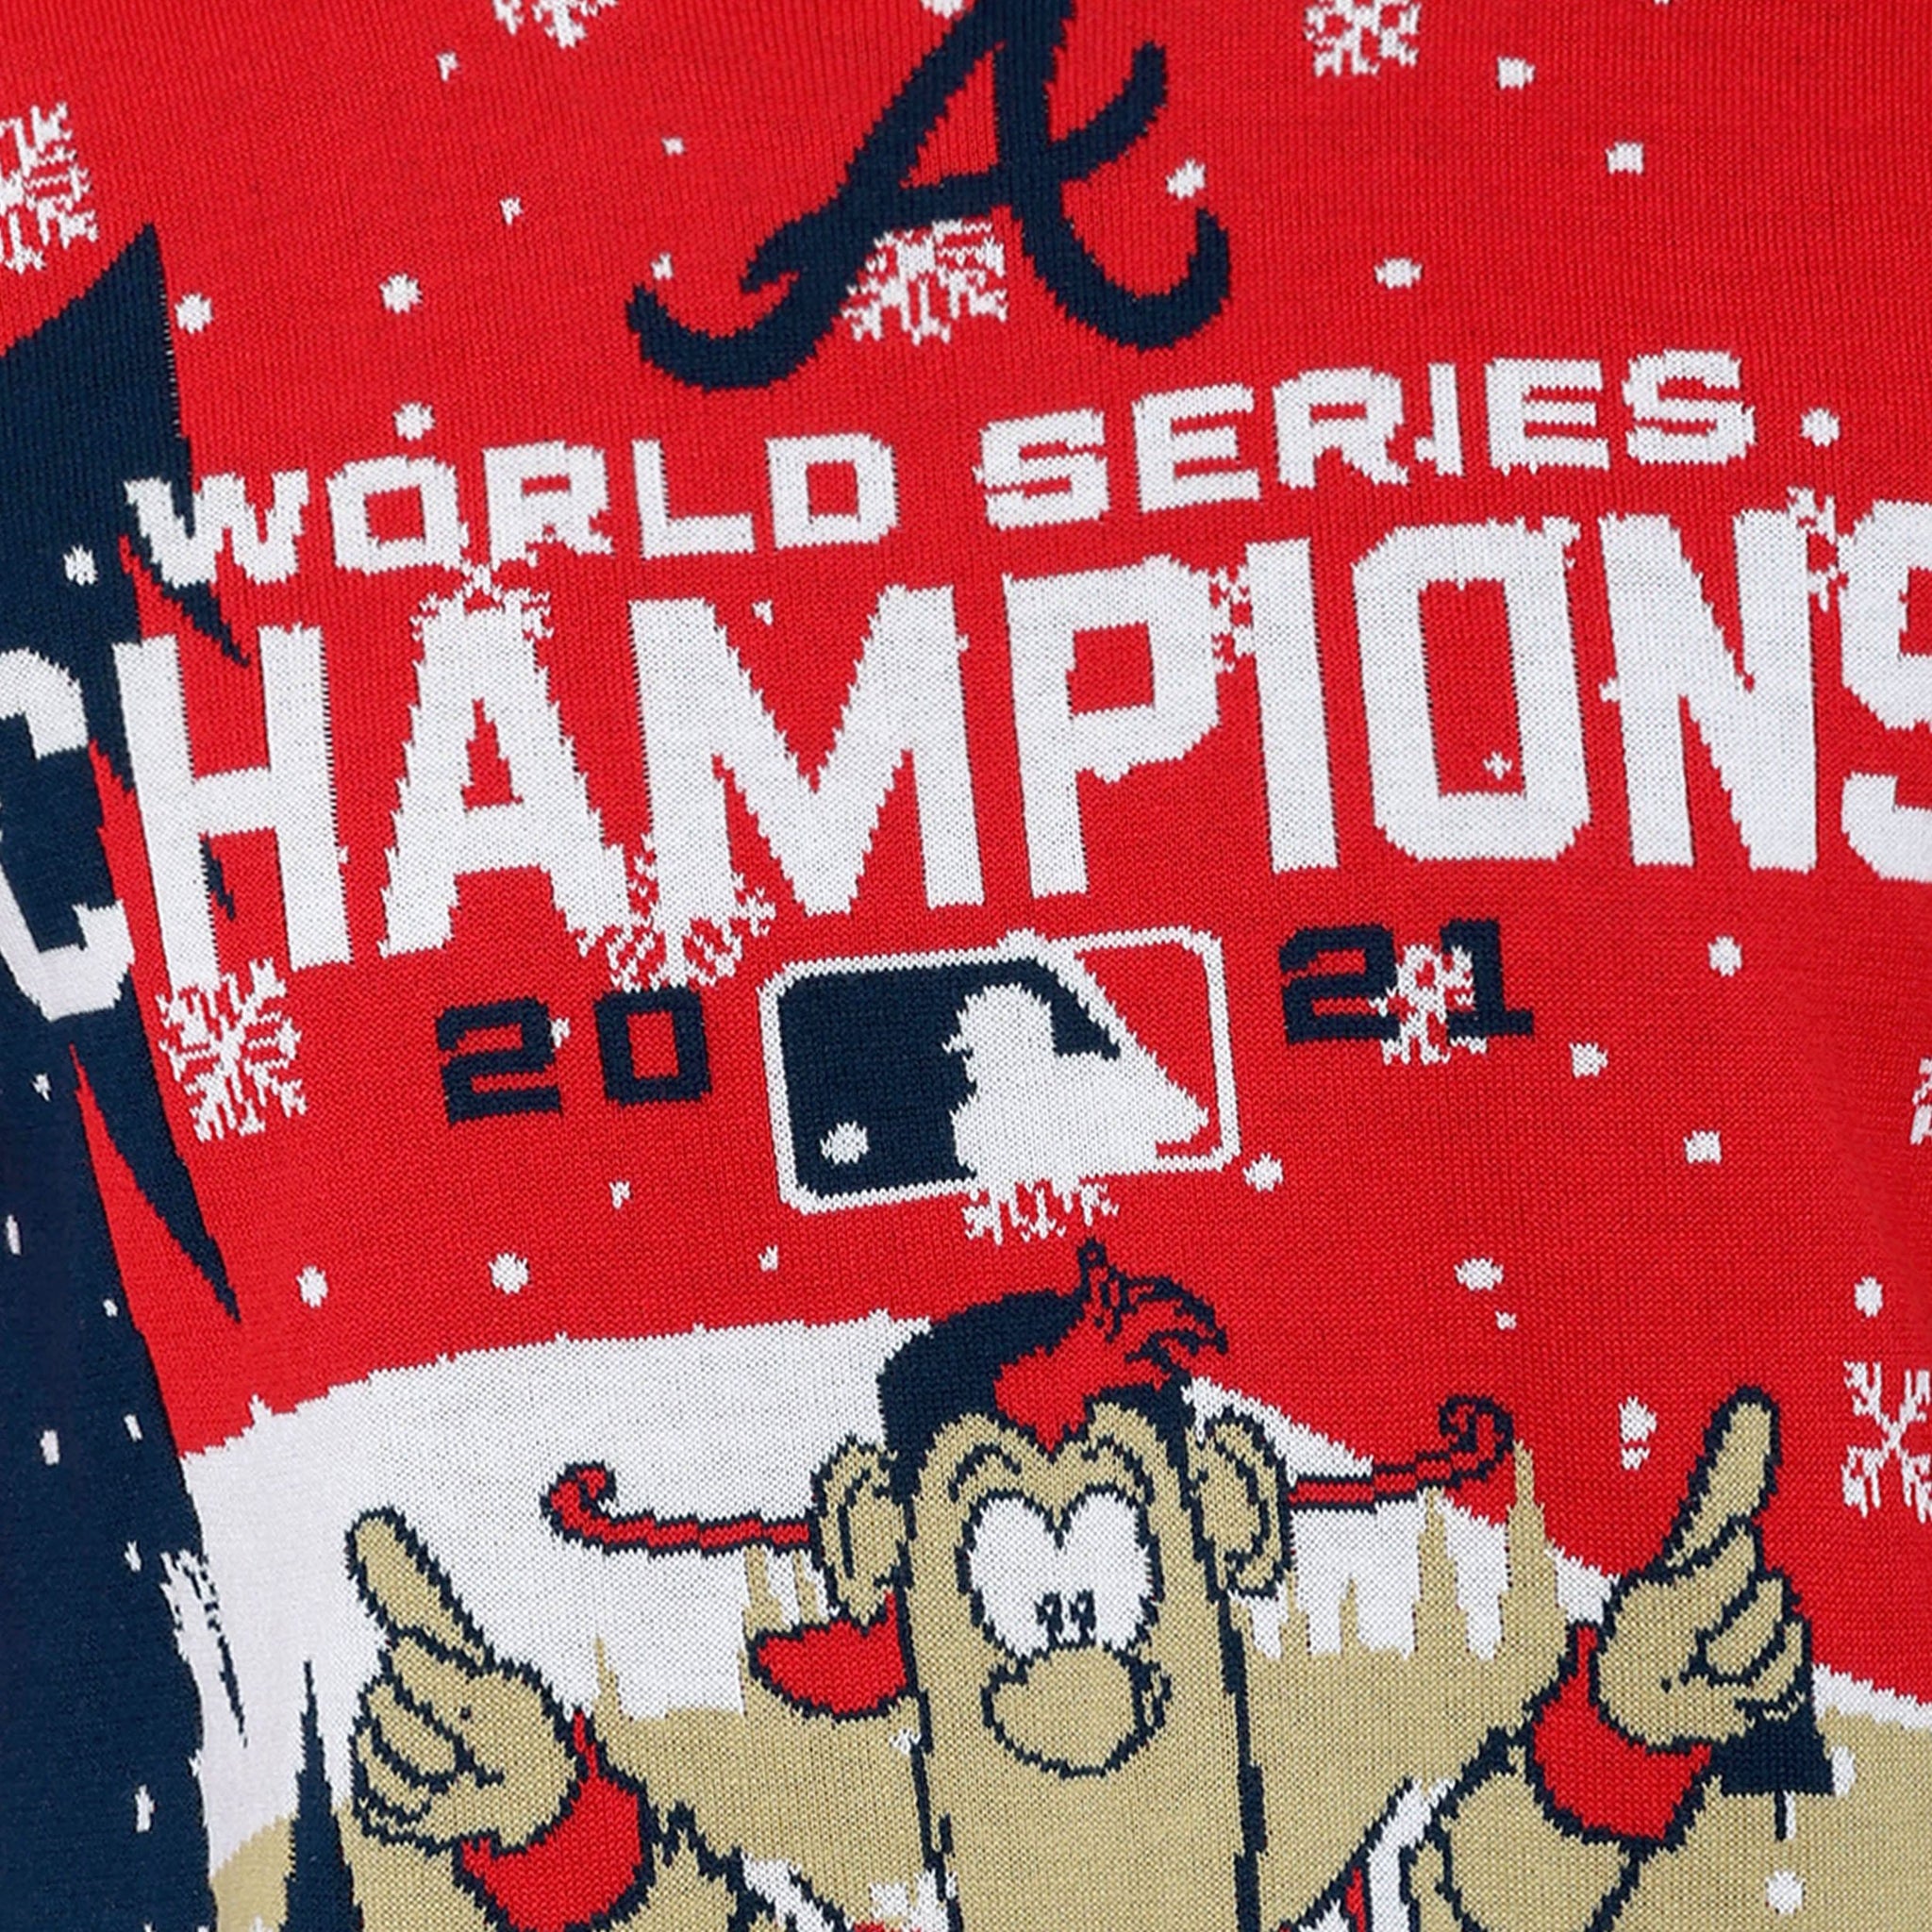 Buy Atlanta Baseball Fans Shirt World Series 2021 Champions